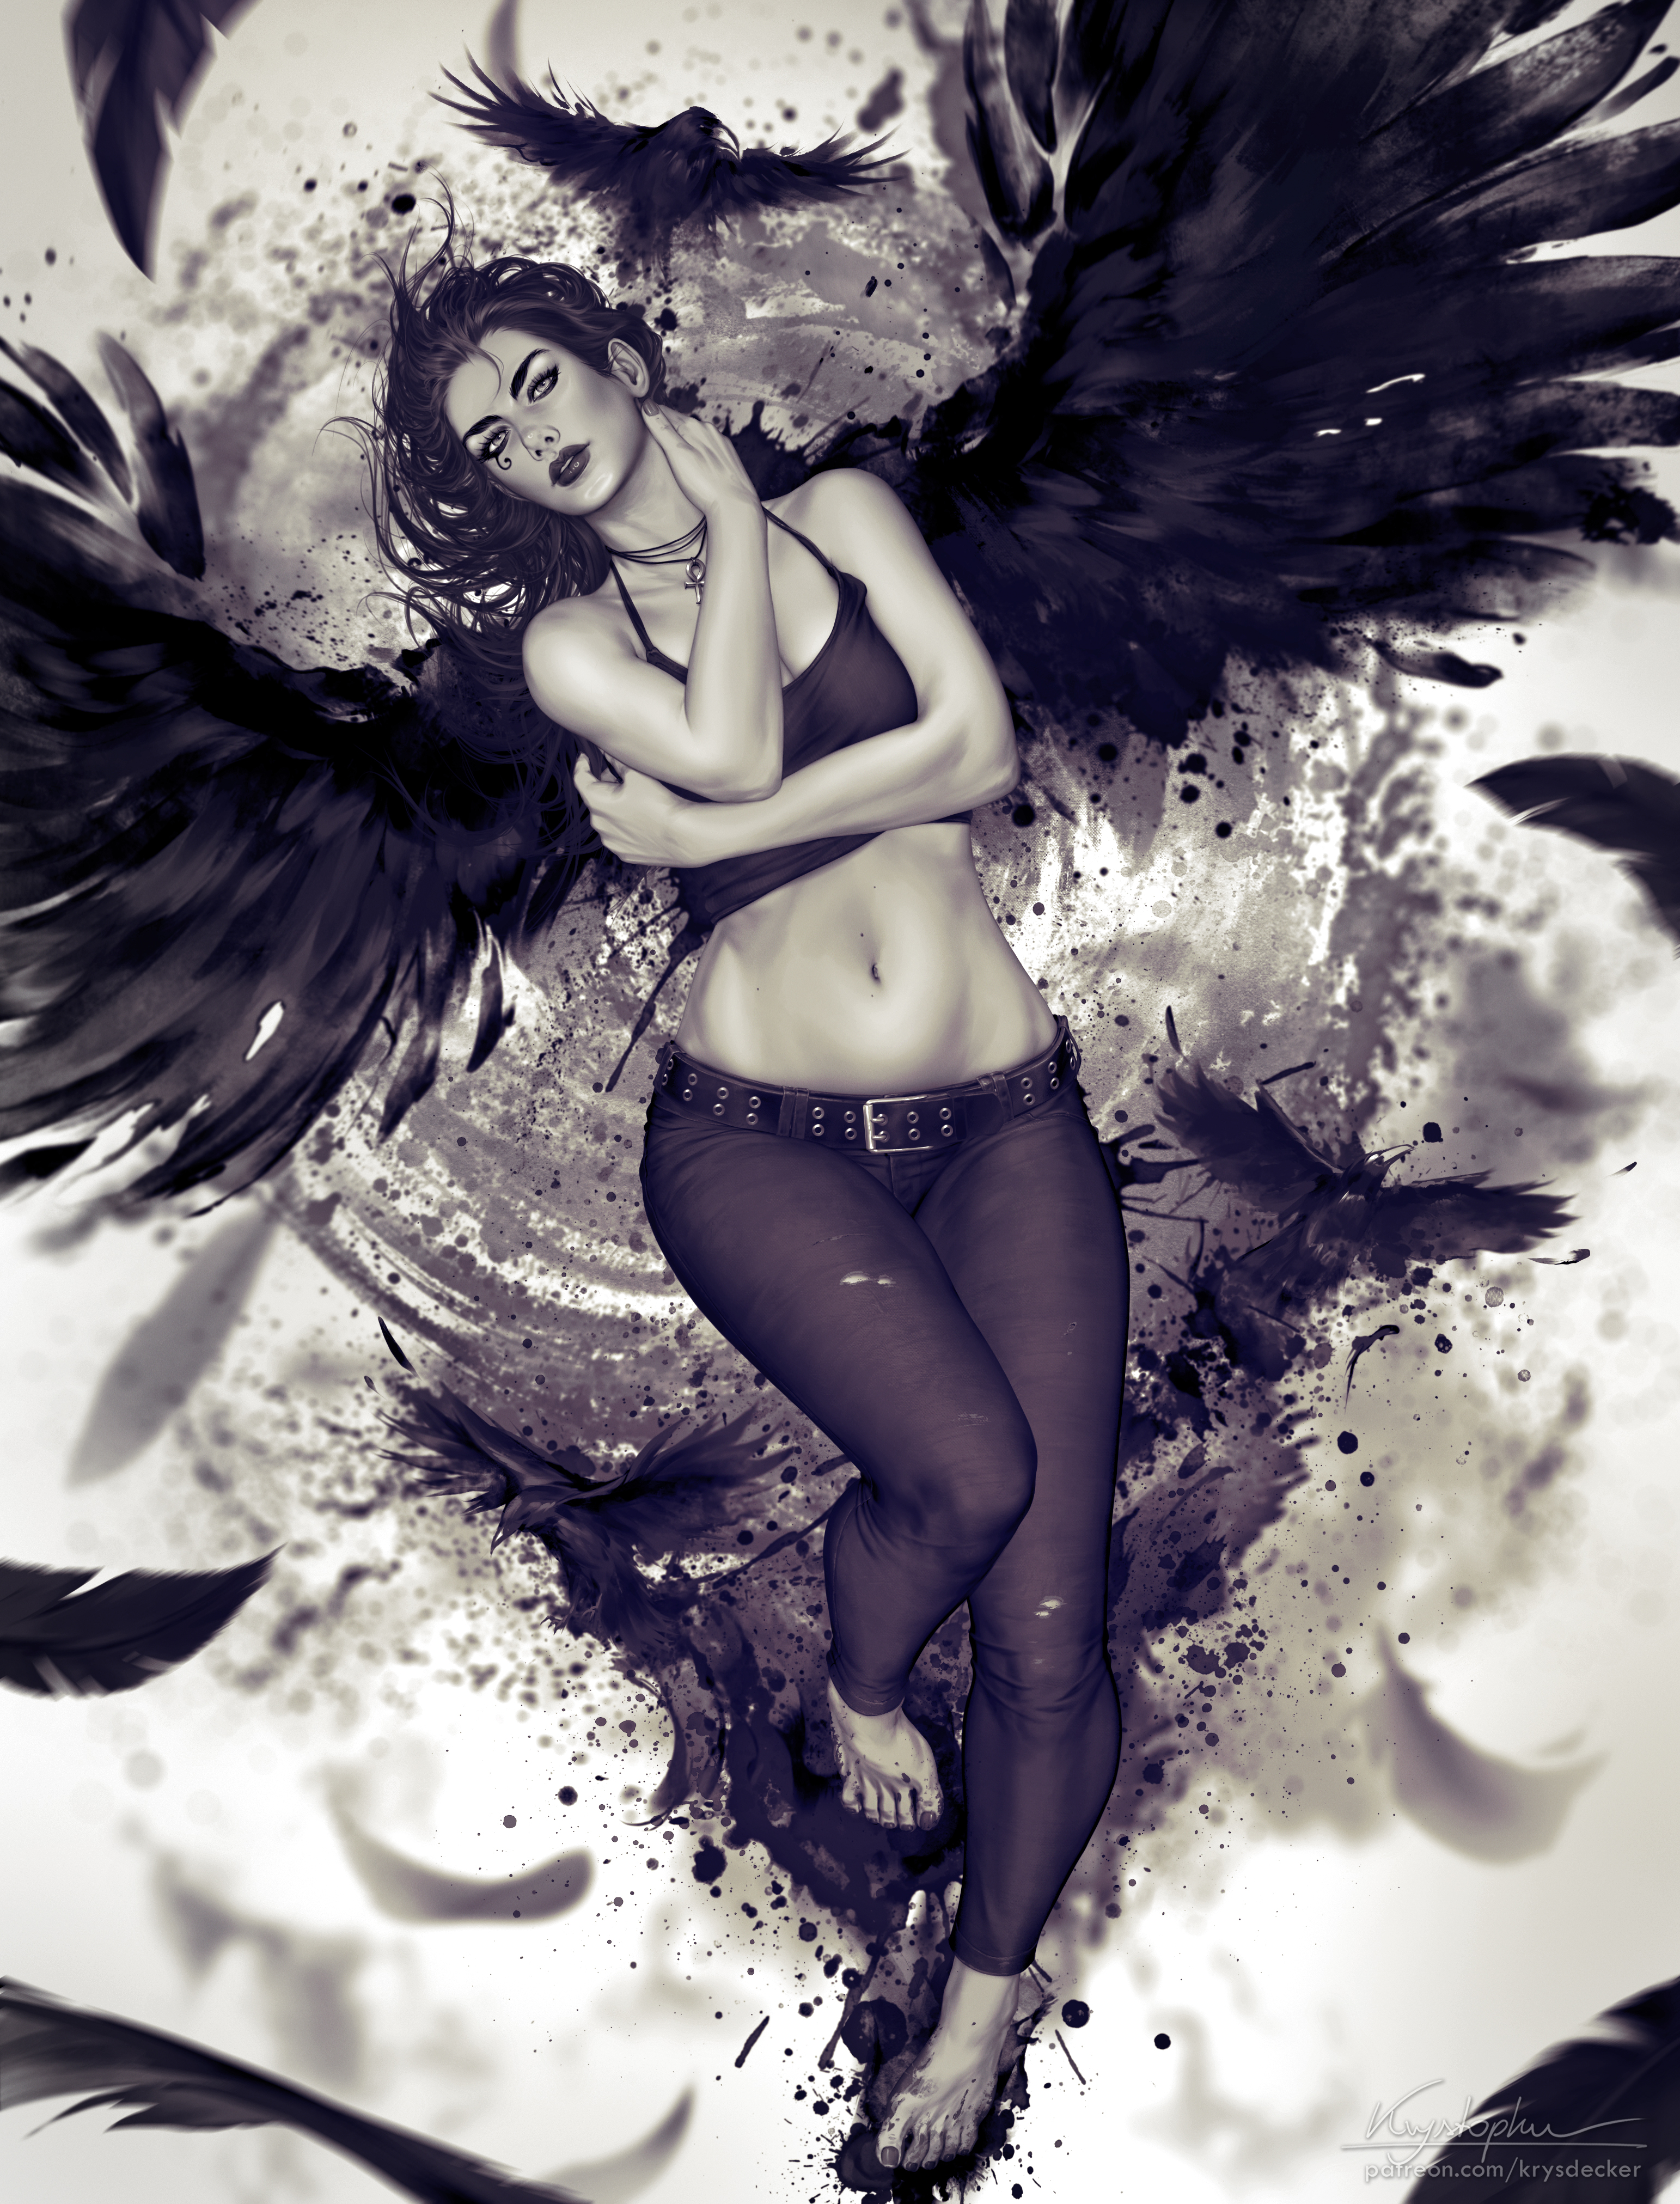 Death Character Sandman Artwork Drawing Fan Art Krys Decker Women Wings Fantasy Girl 3085x4047